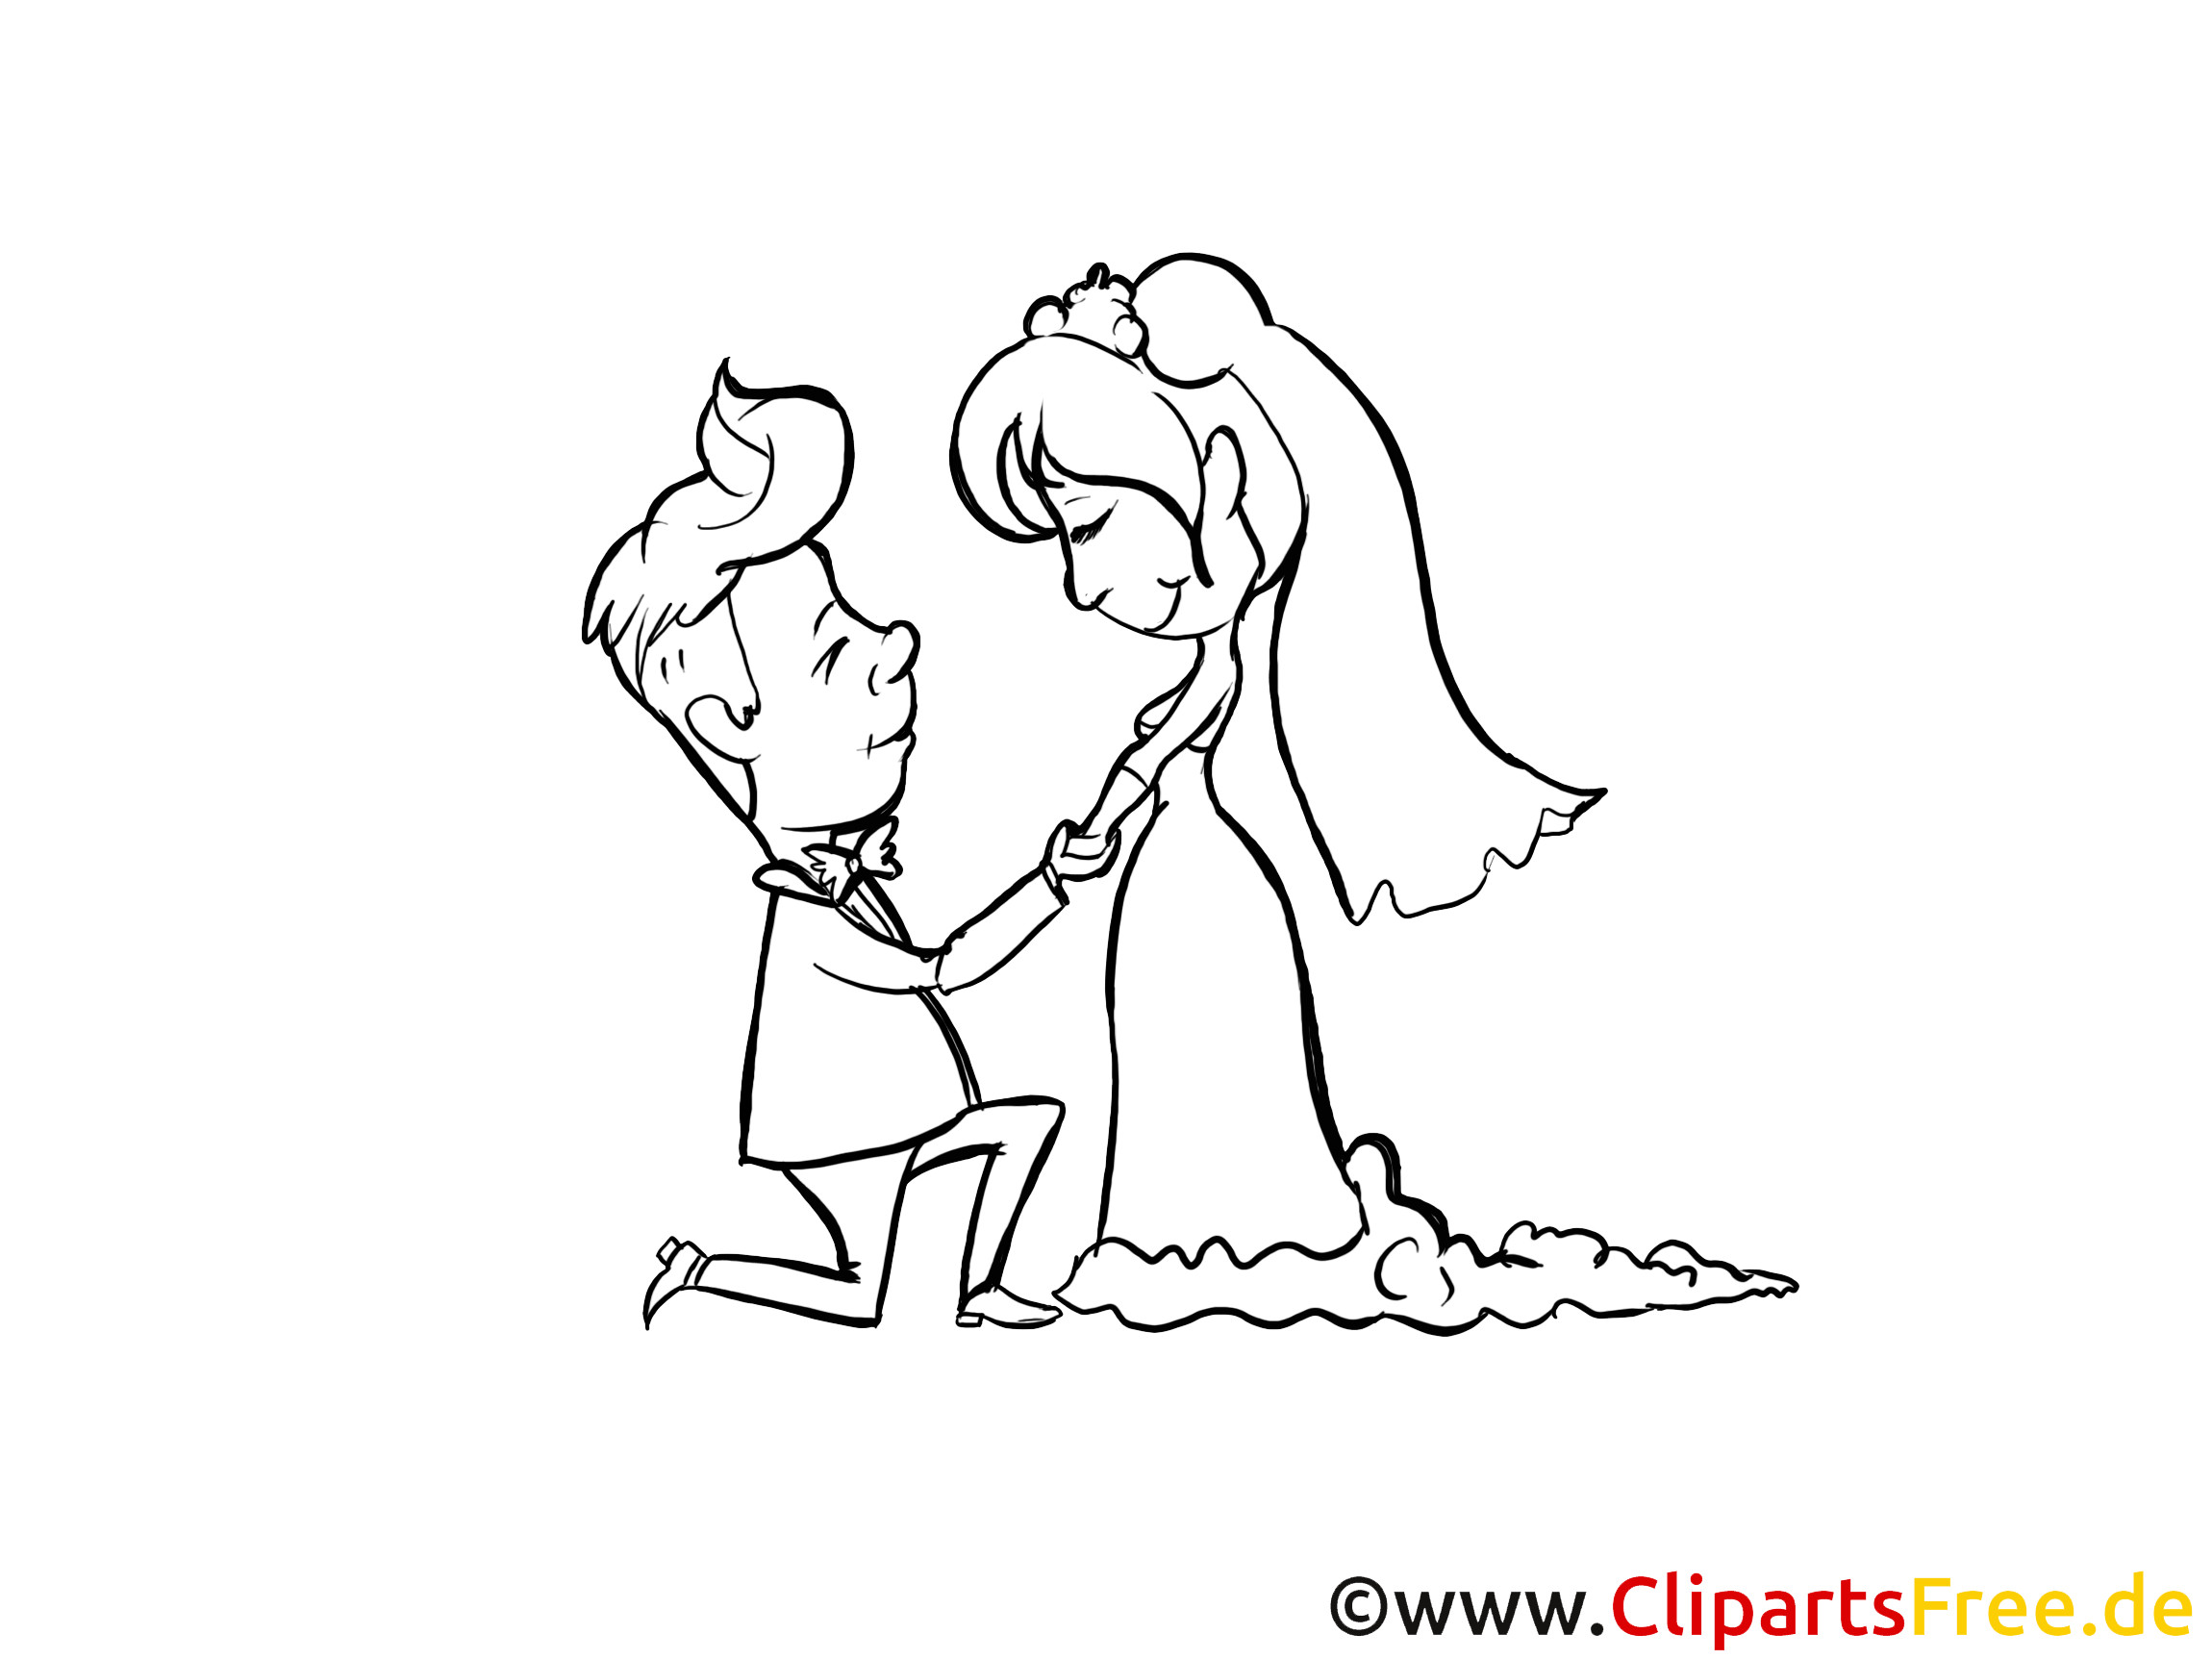 Zeichnung Hochzeit
 Schwarz weisse Zeichnung zur Hochzeit Brautpaar